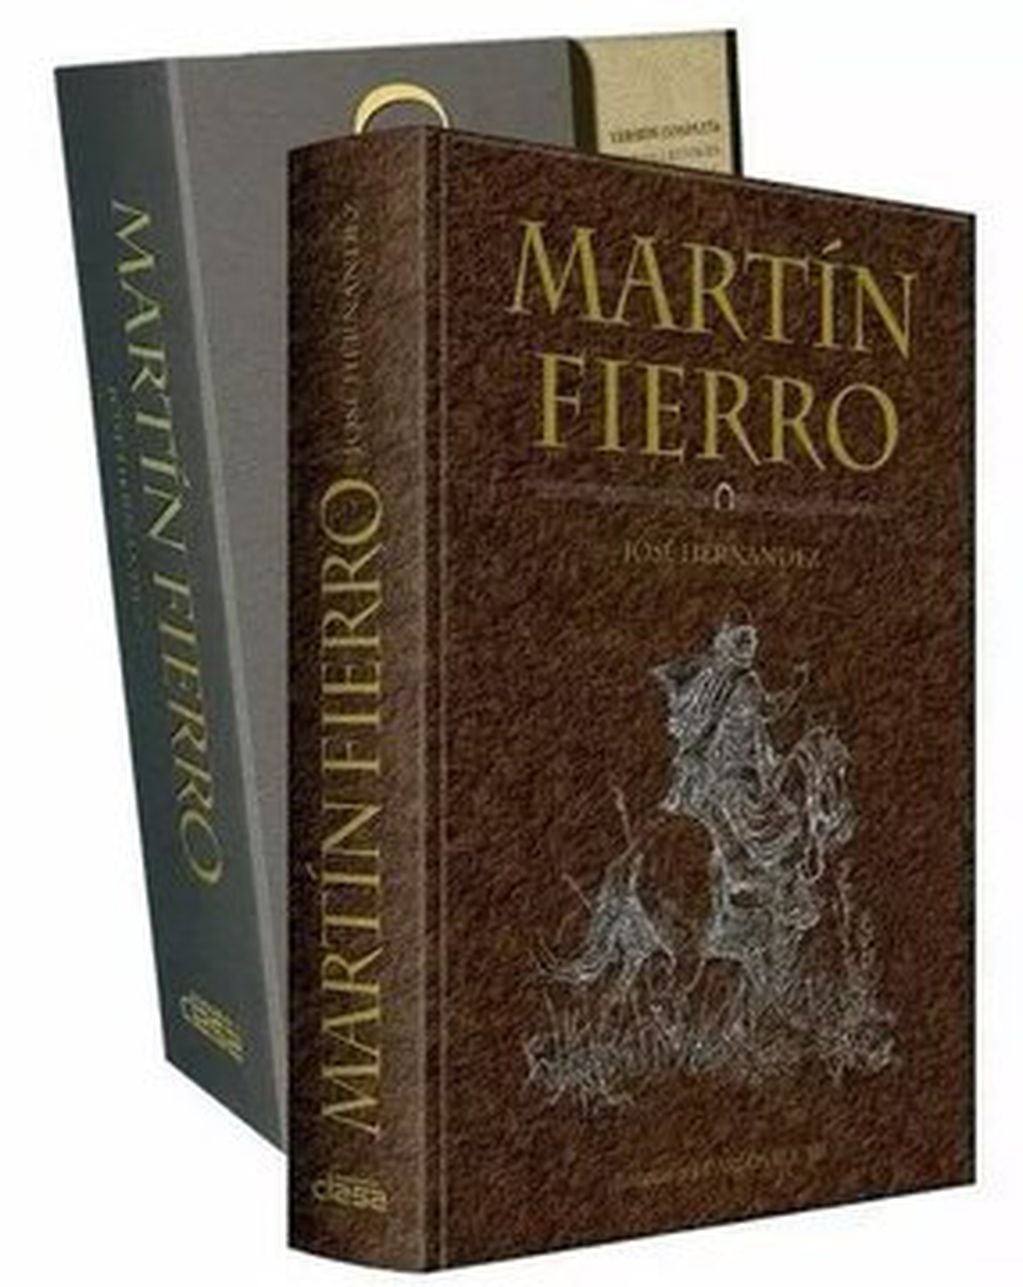 El Martín Fierro, la máxima expresión de las novelas gauchescas de la Argentina. Twitter @mundorural84